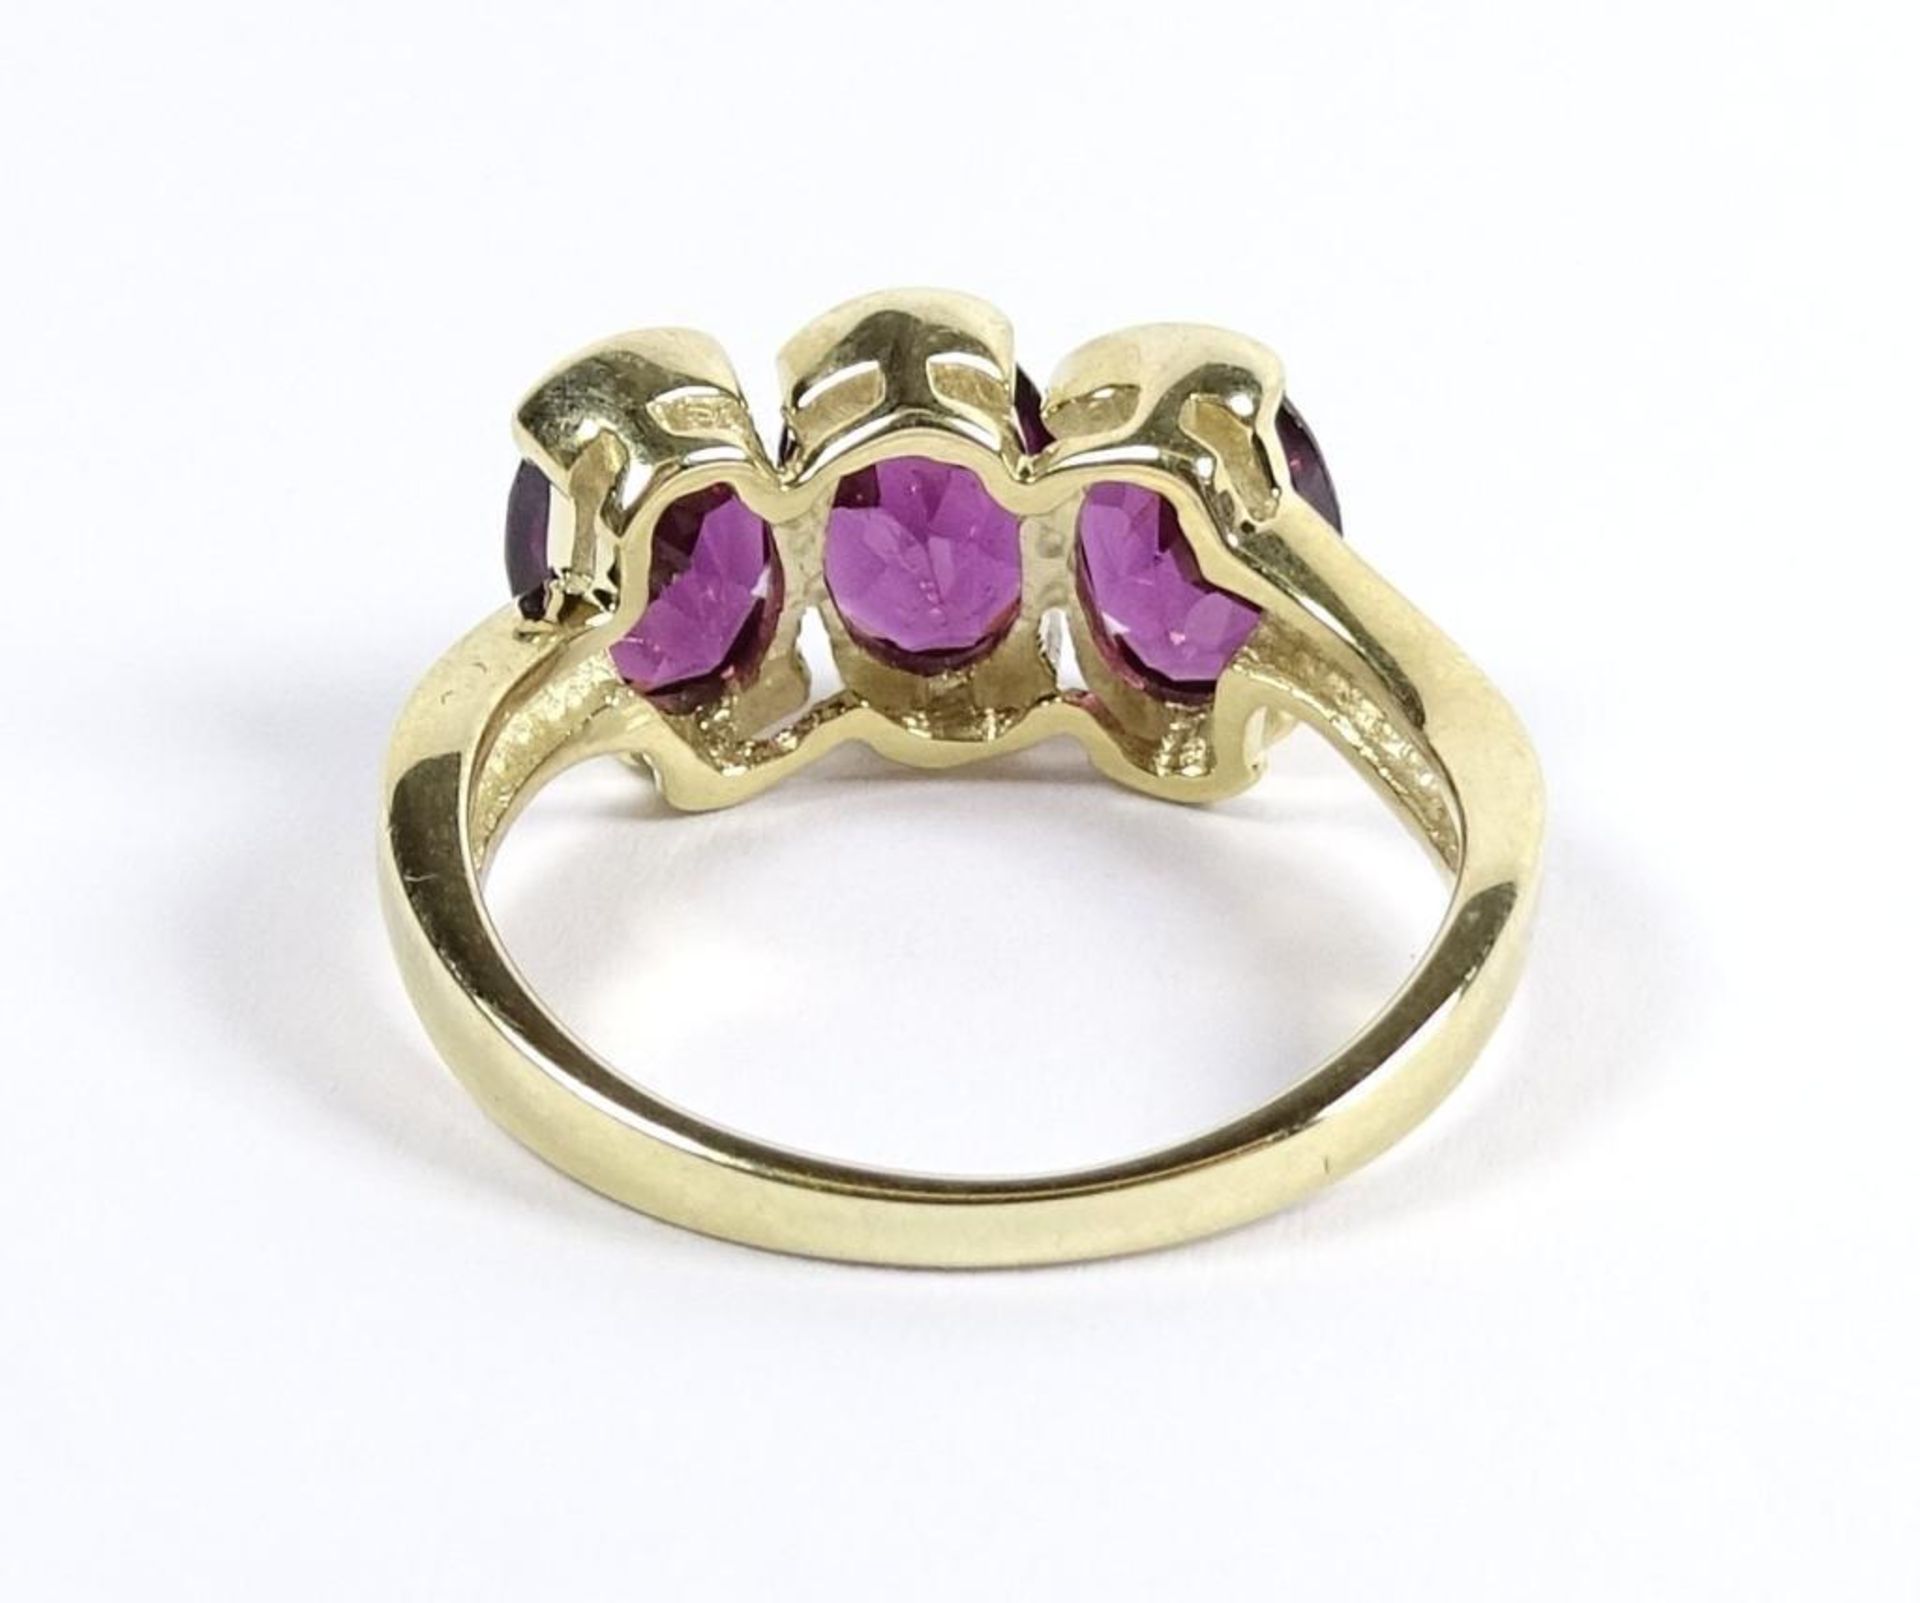 Goldring 375/000,violette Steine, RG 56/57, 4,1 Gramm,Juweliersauflösung-Ungetragene Ware / ohne - Bild 3 aus 3